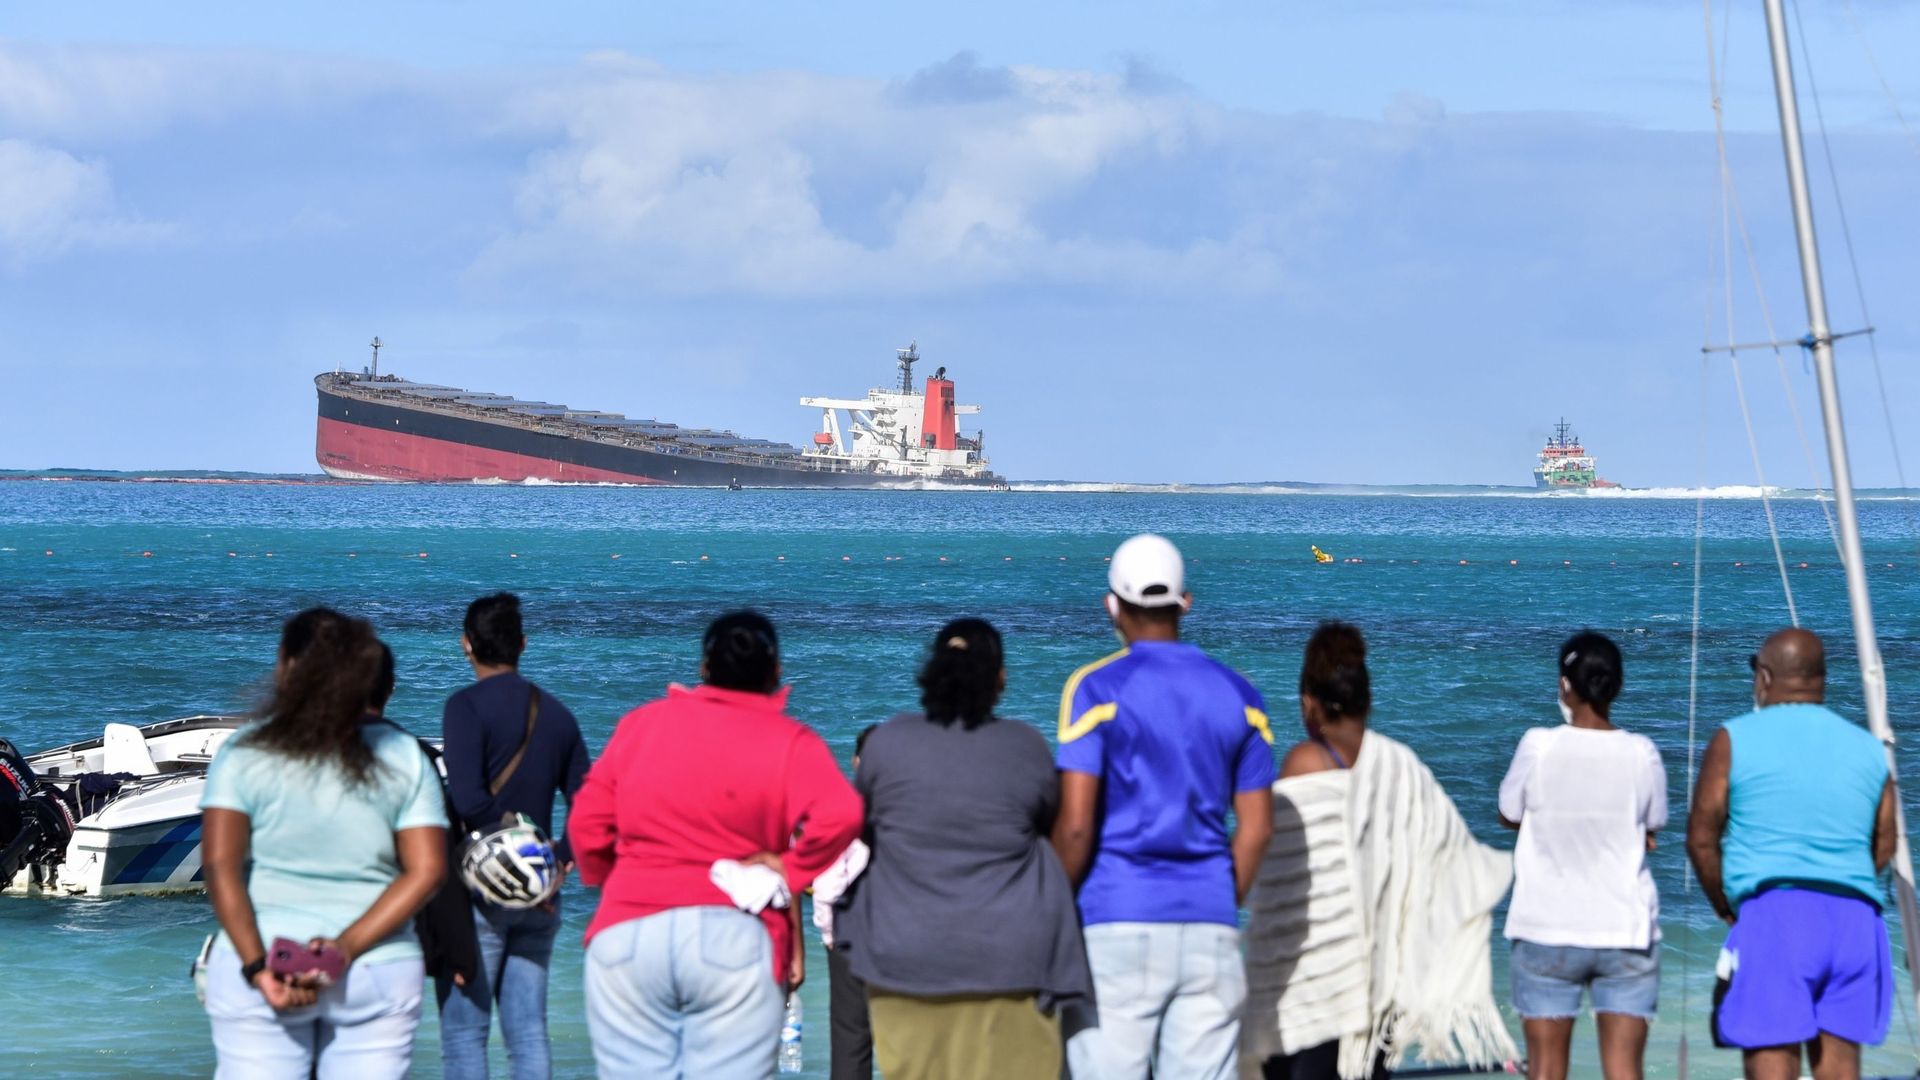 De la terre ferme, habitants et touristes contemplent l'angoissant spectacle : du navire échoué s'échappent des hydrocarbures. Les plages environnantes sont interdites.